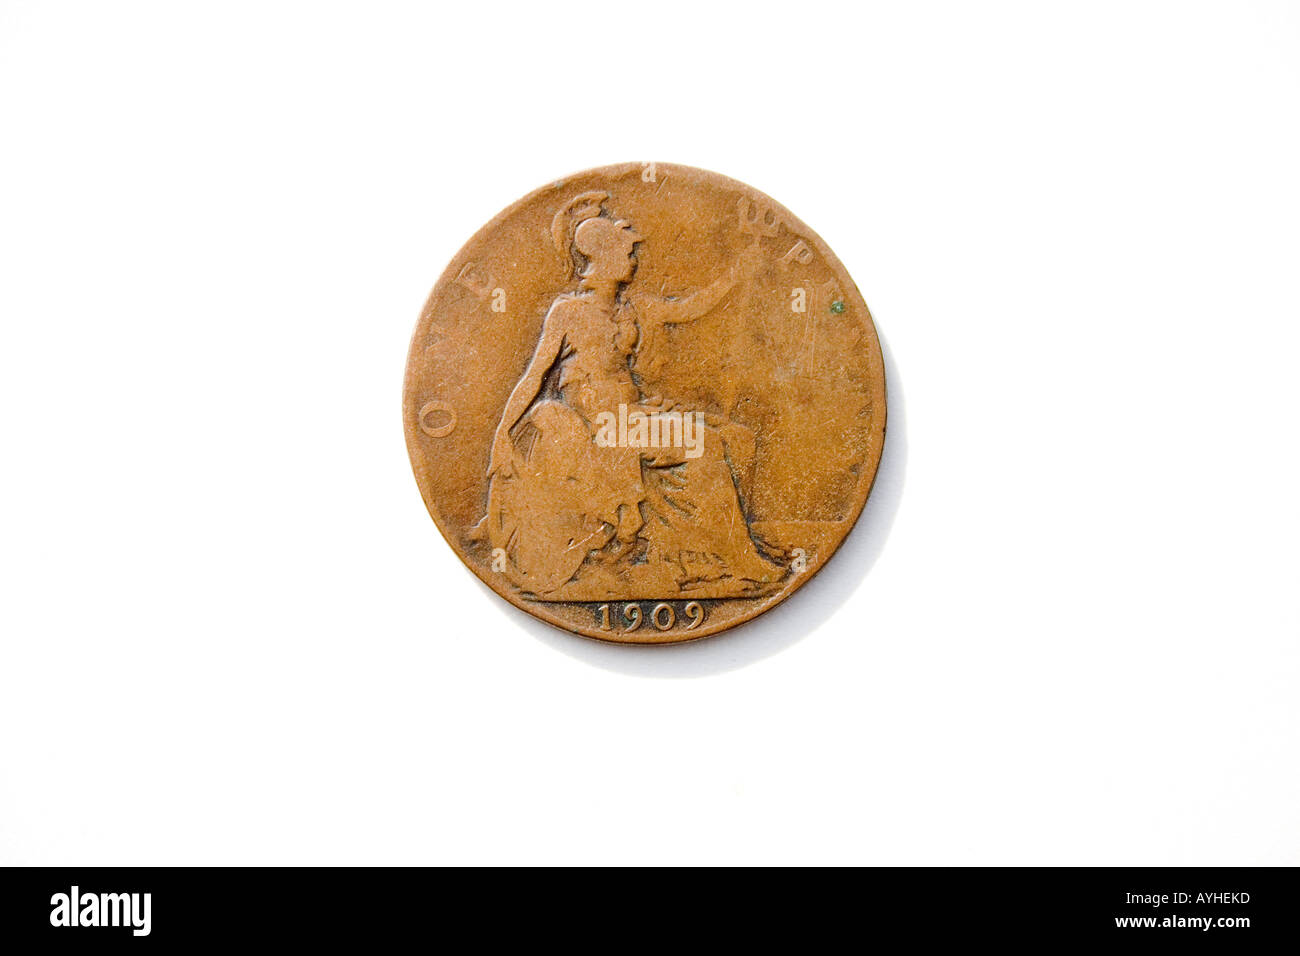 Facce del re Edward VII penny datata 1909 parte della ormai defunta £sd sistema monetario. Foto Stock